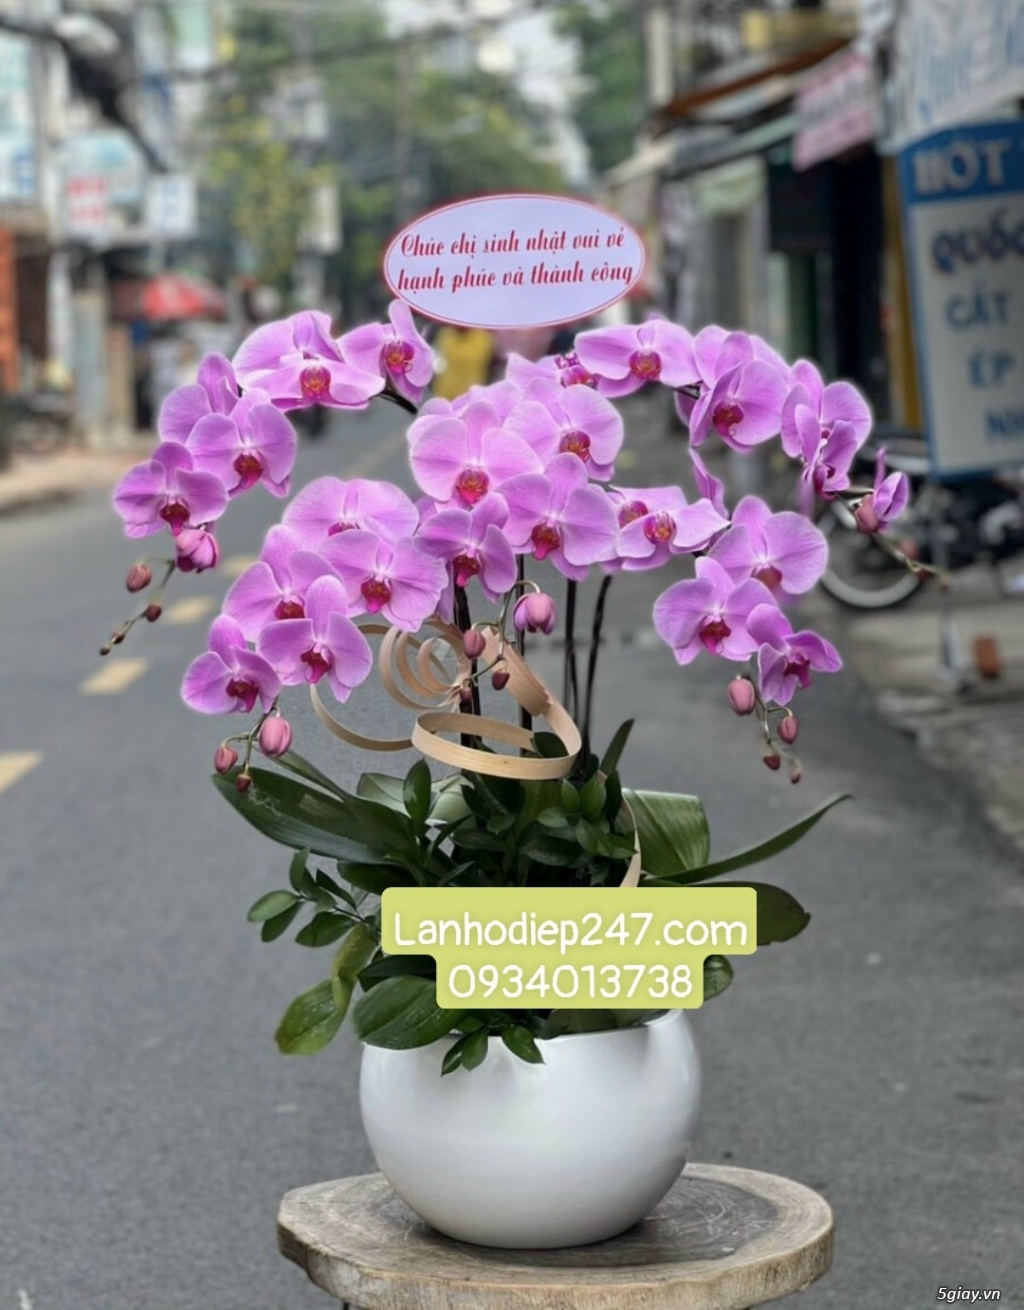 Shop hoa tươi lan hồ điệp 247 tại Thủ Dầu Một Bình Dương 0934013738 - 11